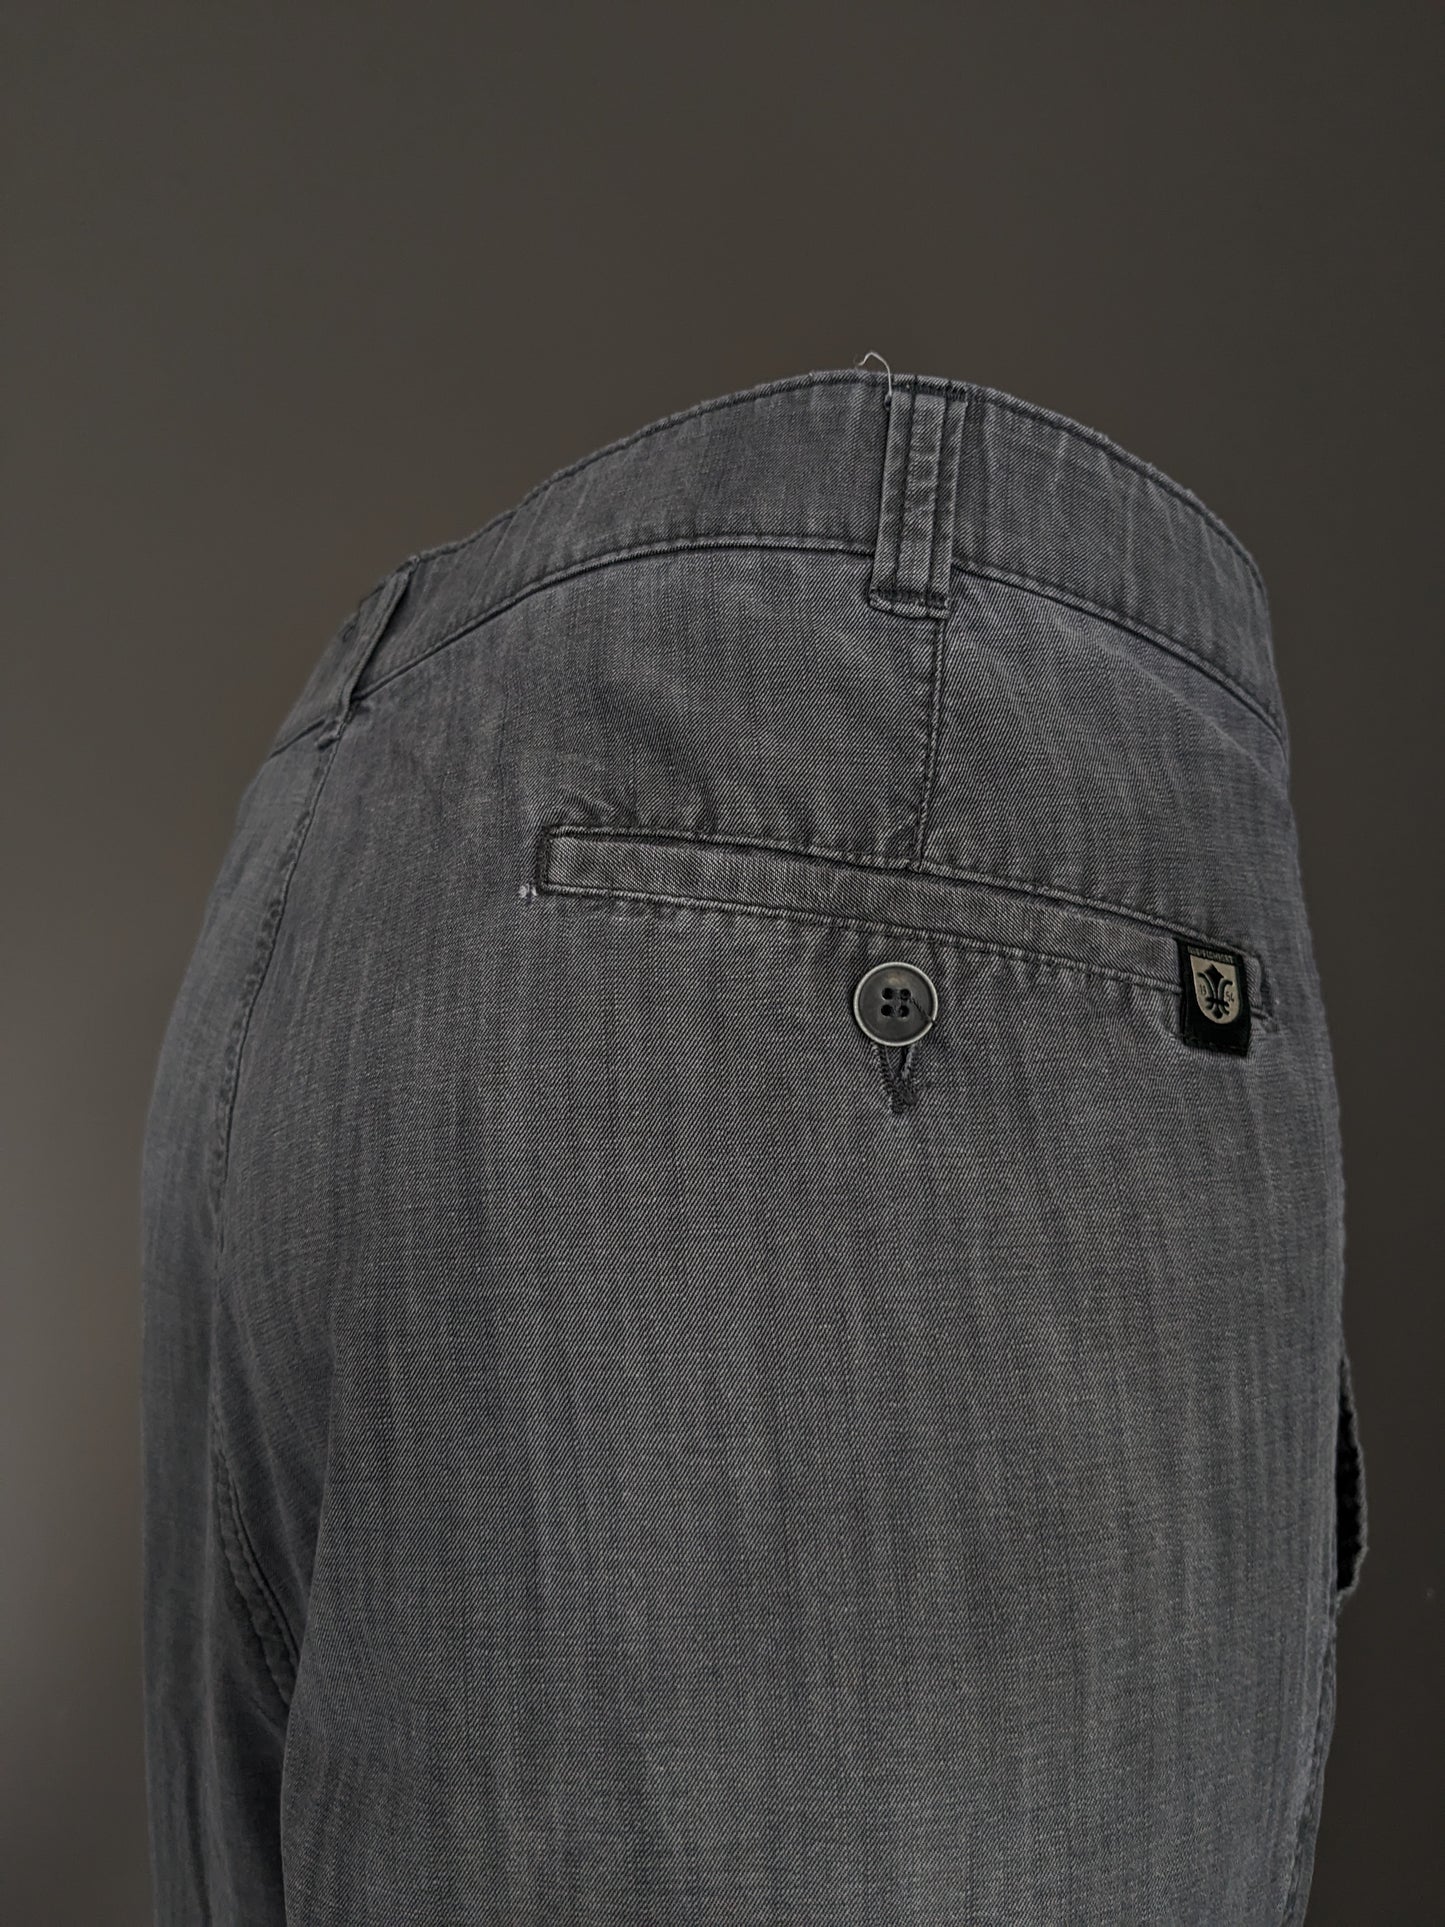 Club ou pantalon / pantalon de confort. Motif gris. Taille 29 (58 / 2xl / xxl)